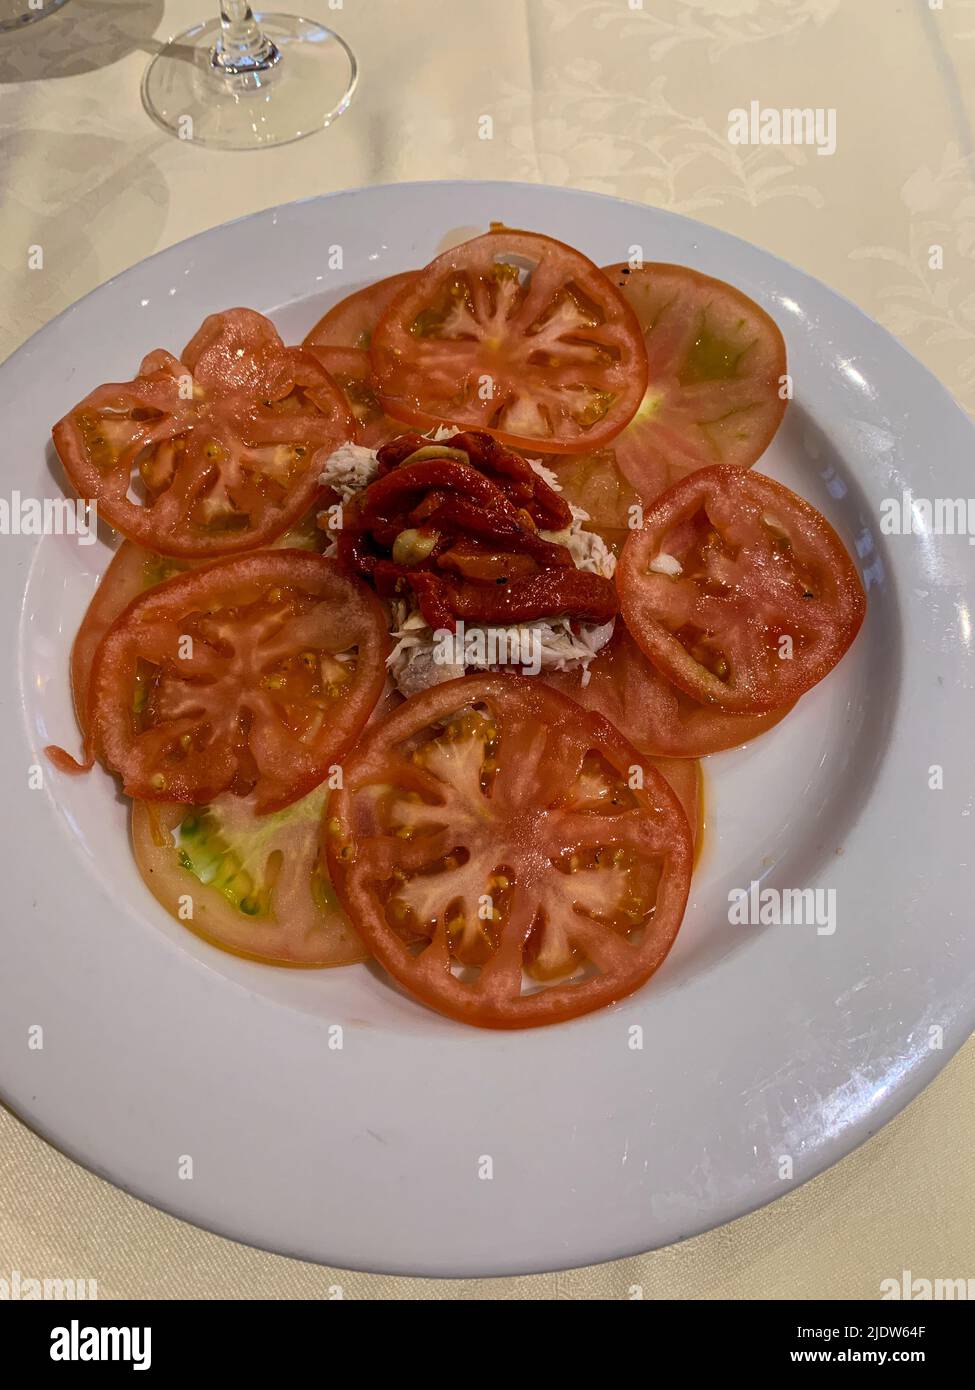 España, cocina española. Tomates, Atún y Pimientos Dulces Rojos (Piquillos). Foto de stock